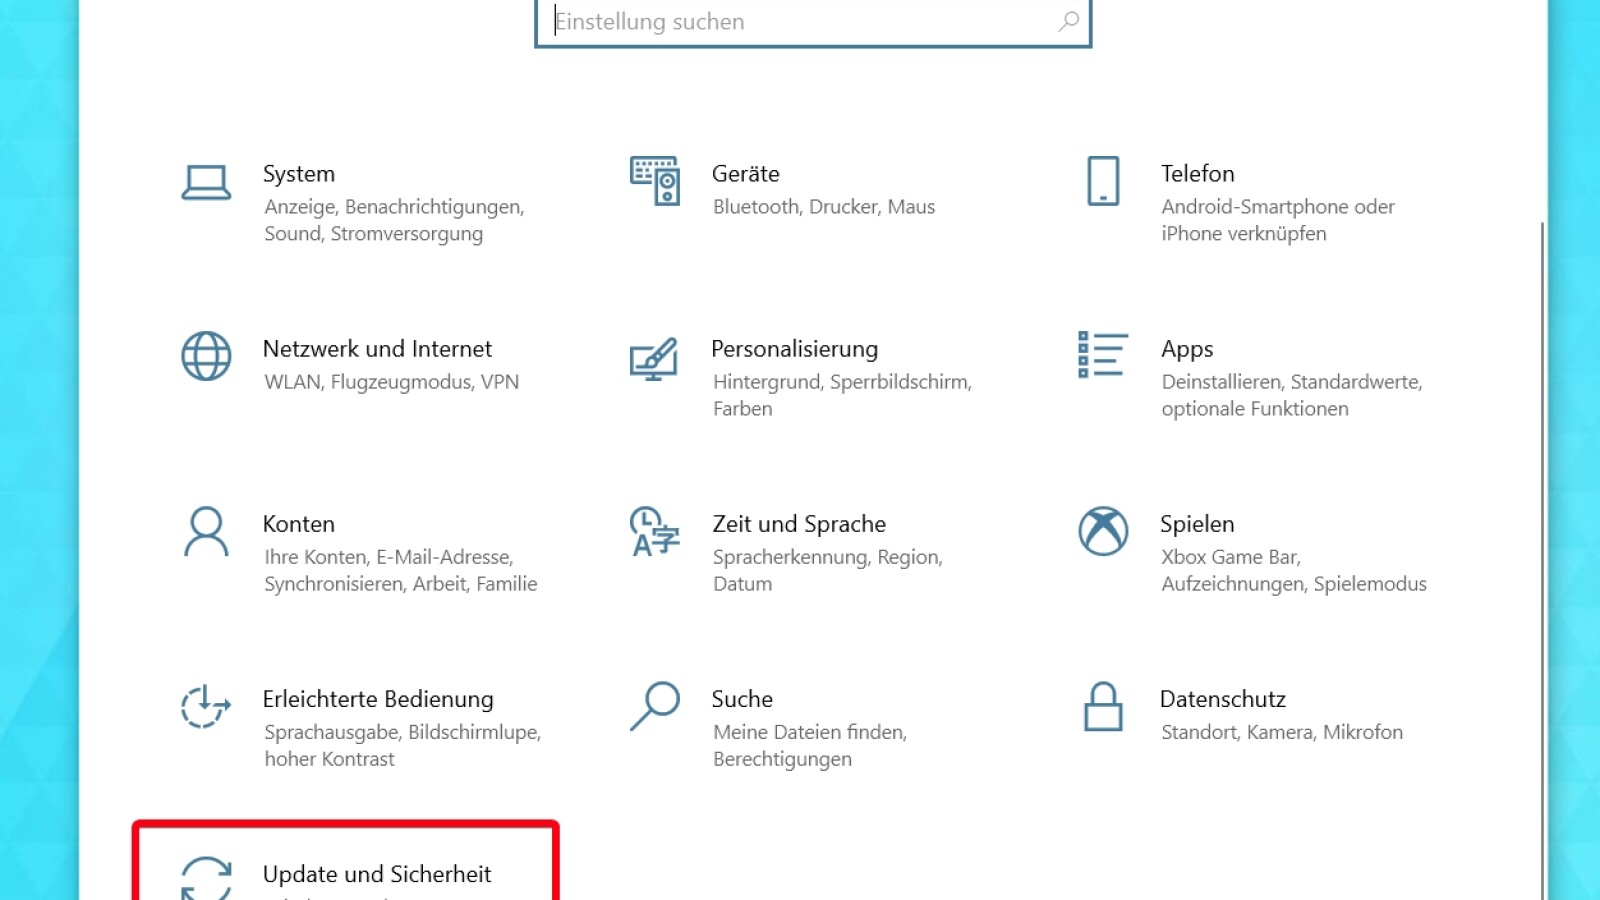 Windows 10: So deaktiviert ihr die Treibersignatur